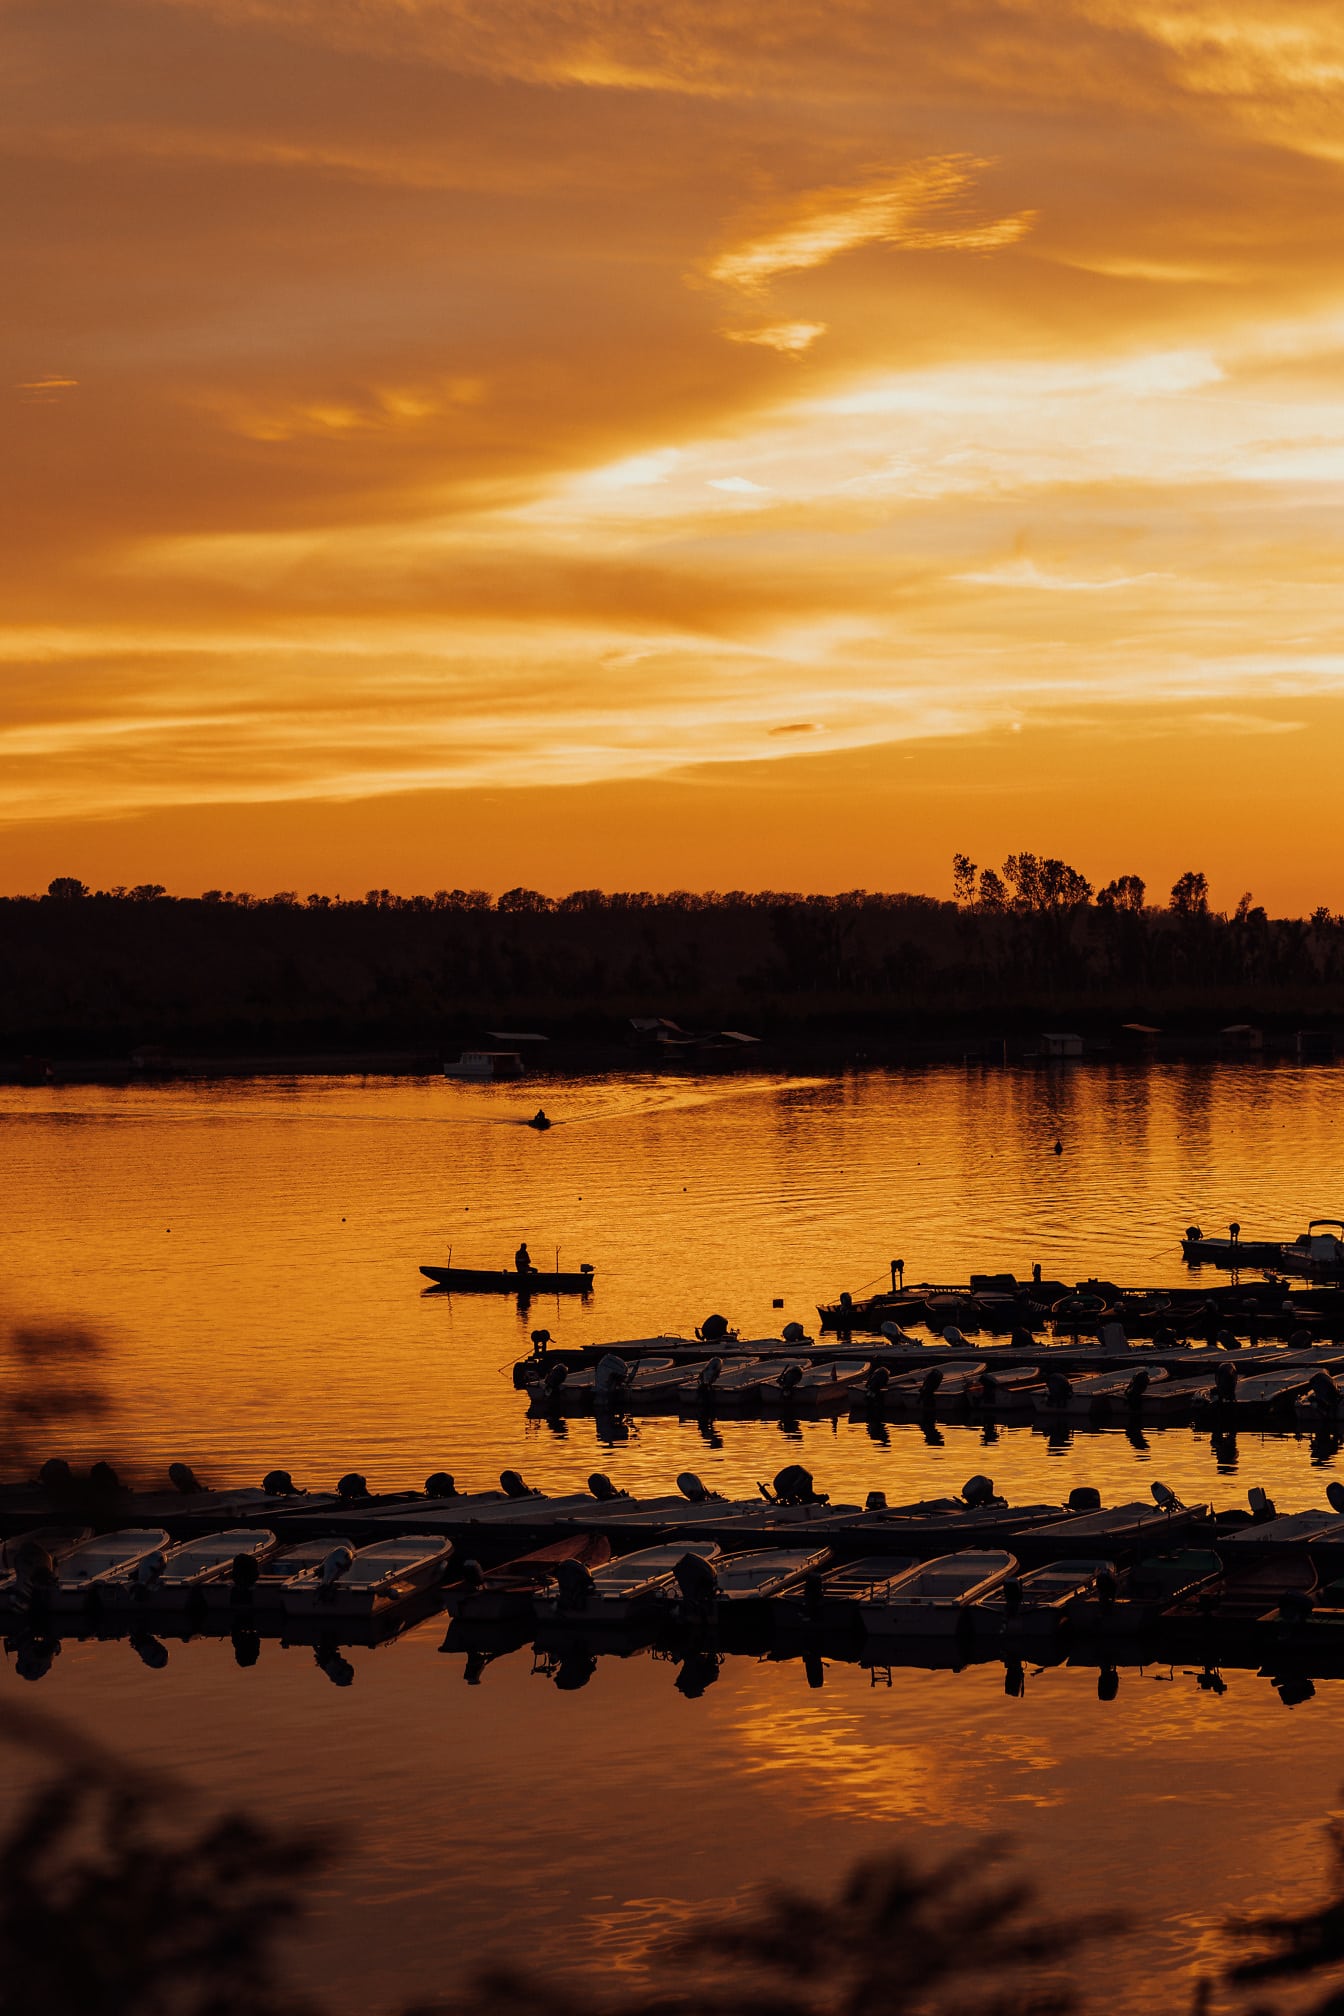 Veličanstveni odraz zalaska sunca na obali jezera siluetom brodova u luci